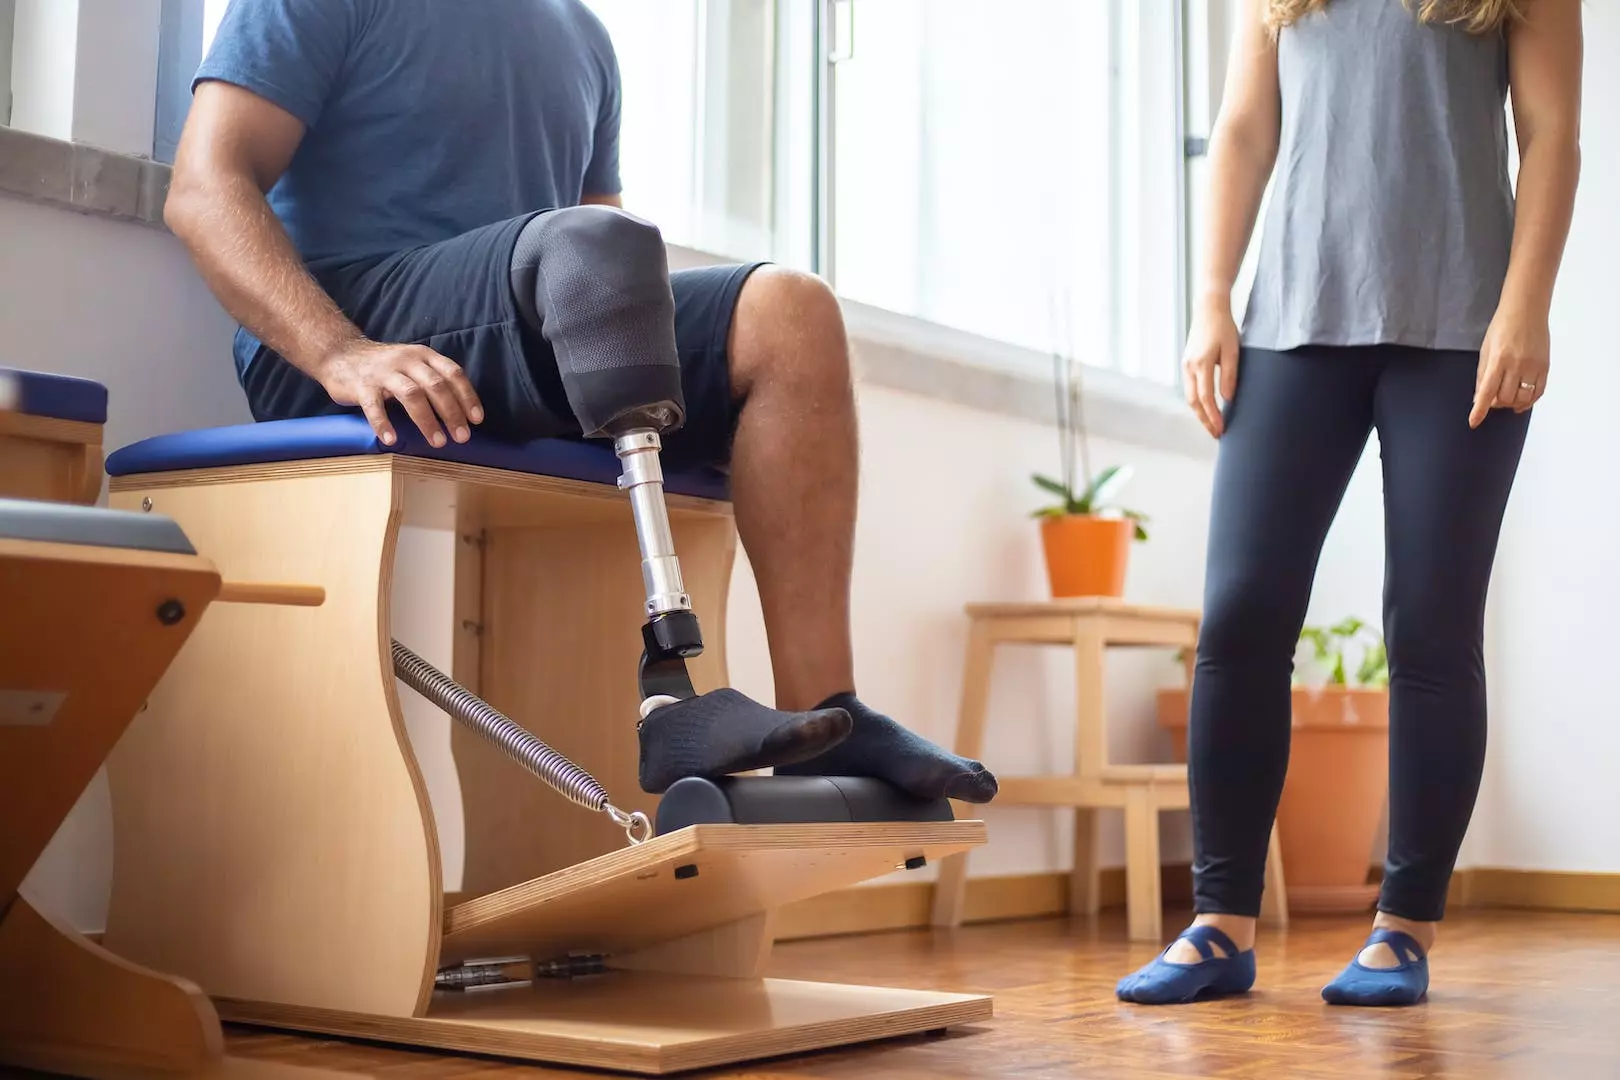 Fysioterapi og rehabilitering kurs: Fremme helse og velvære gjennom bevegelse og behandling